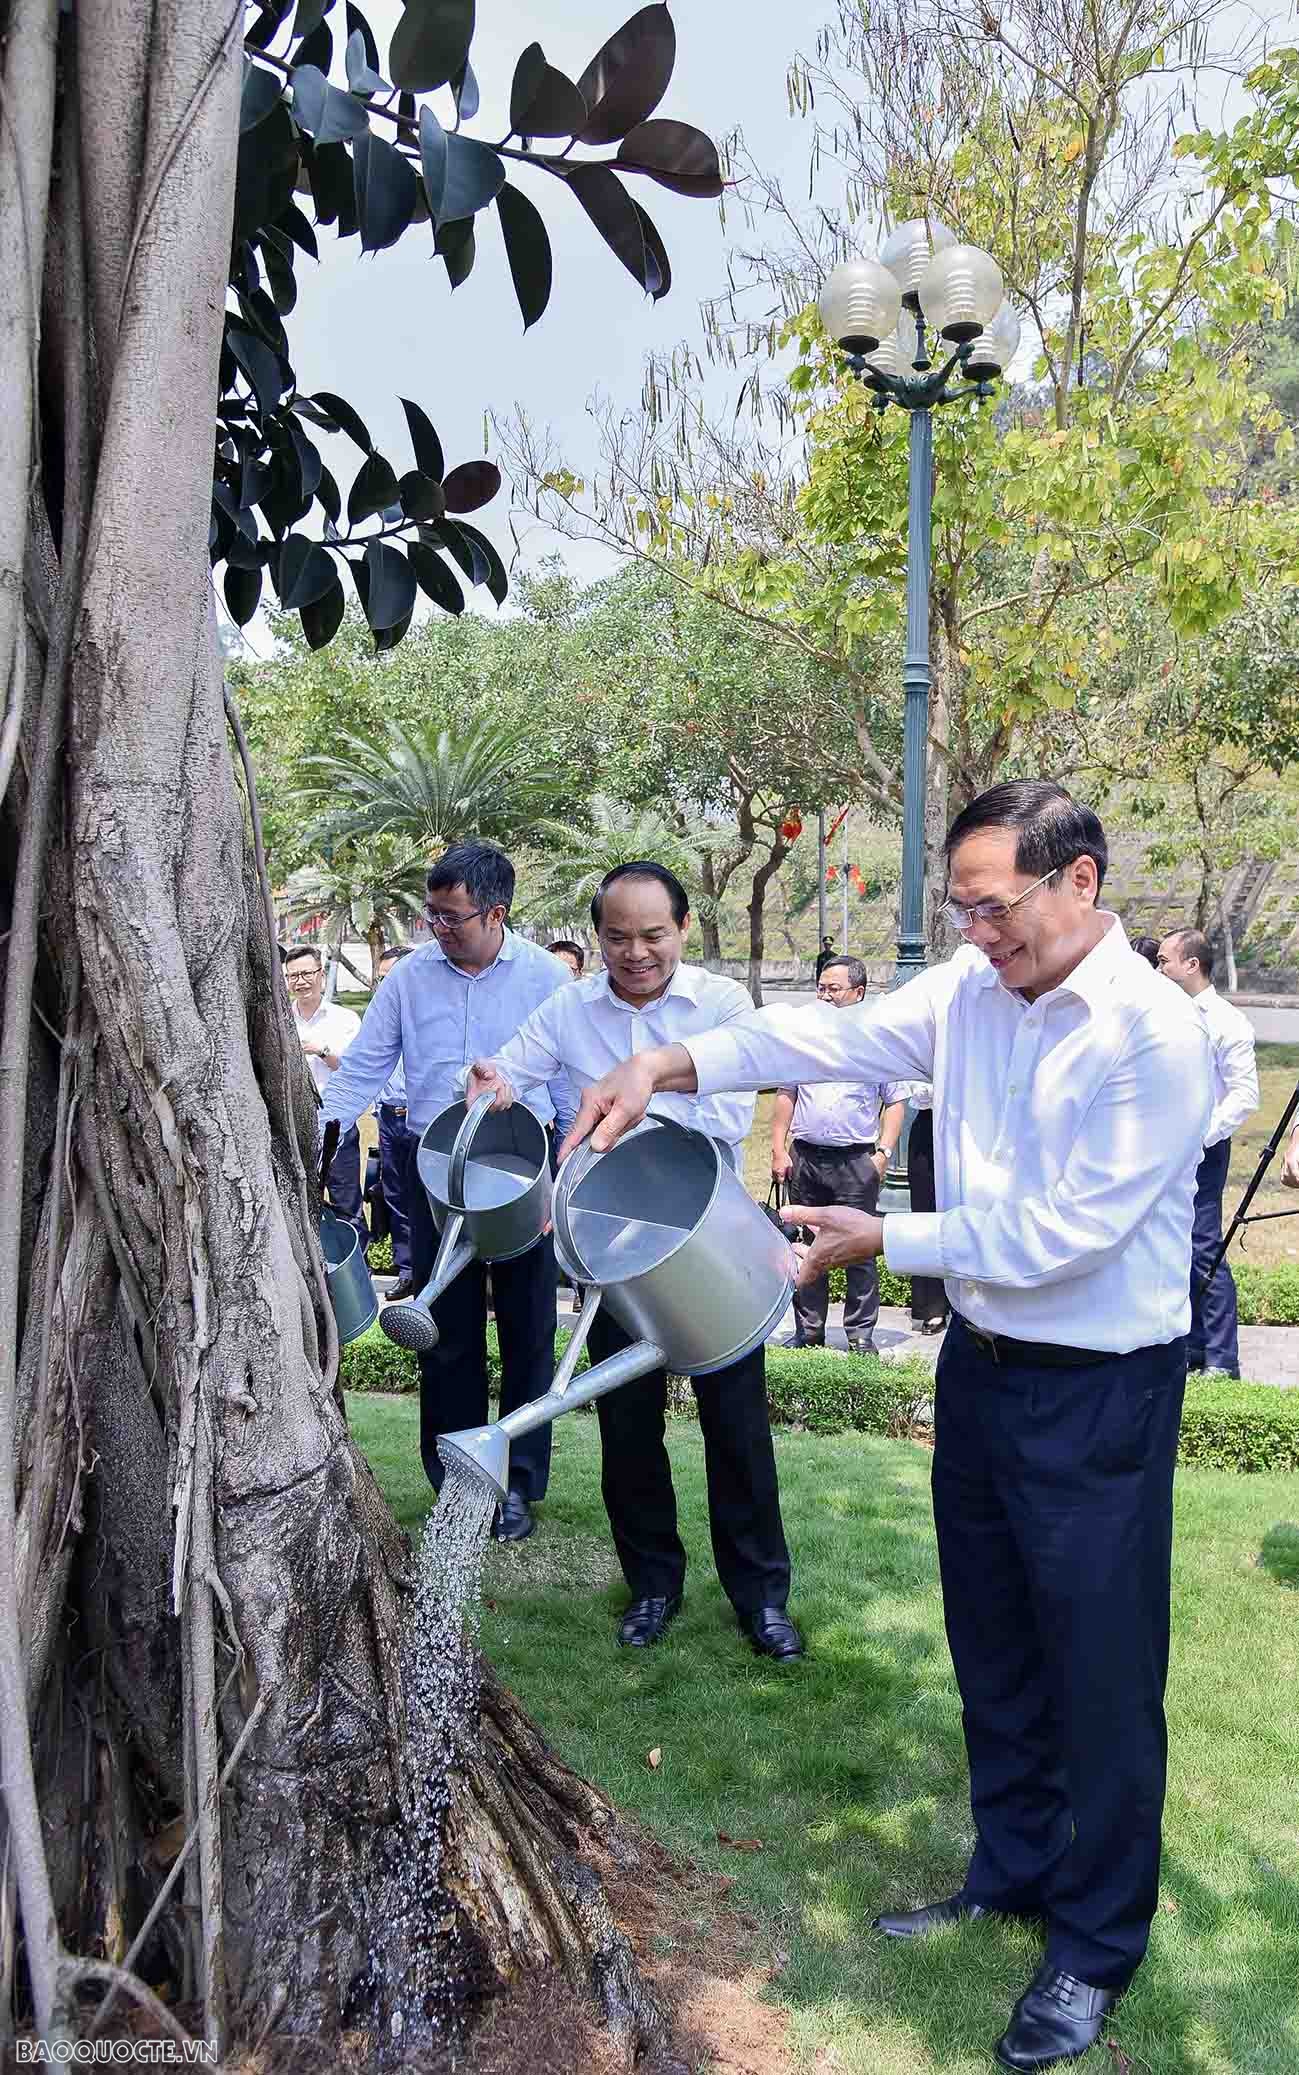 Tổng Bí thư Nguyễn Phú Trọng và Đoàn đã trồng cây lưu niệm tại khuôn viên Cửa khẩu. Đại sứ Trung Quốc tại Việt Nam Hùng Ba cùng tham dự hoạt động này. Chính vì vậy, cây đa là minh chứng rõ nét cho mối quan hệ giữa 2 nước Việt Nam - Trung Quốc liên tục được đắp xây, vun trồng từ những điều giản dị.